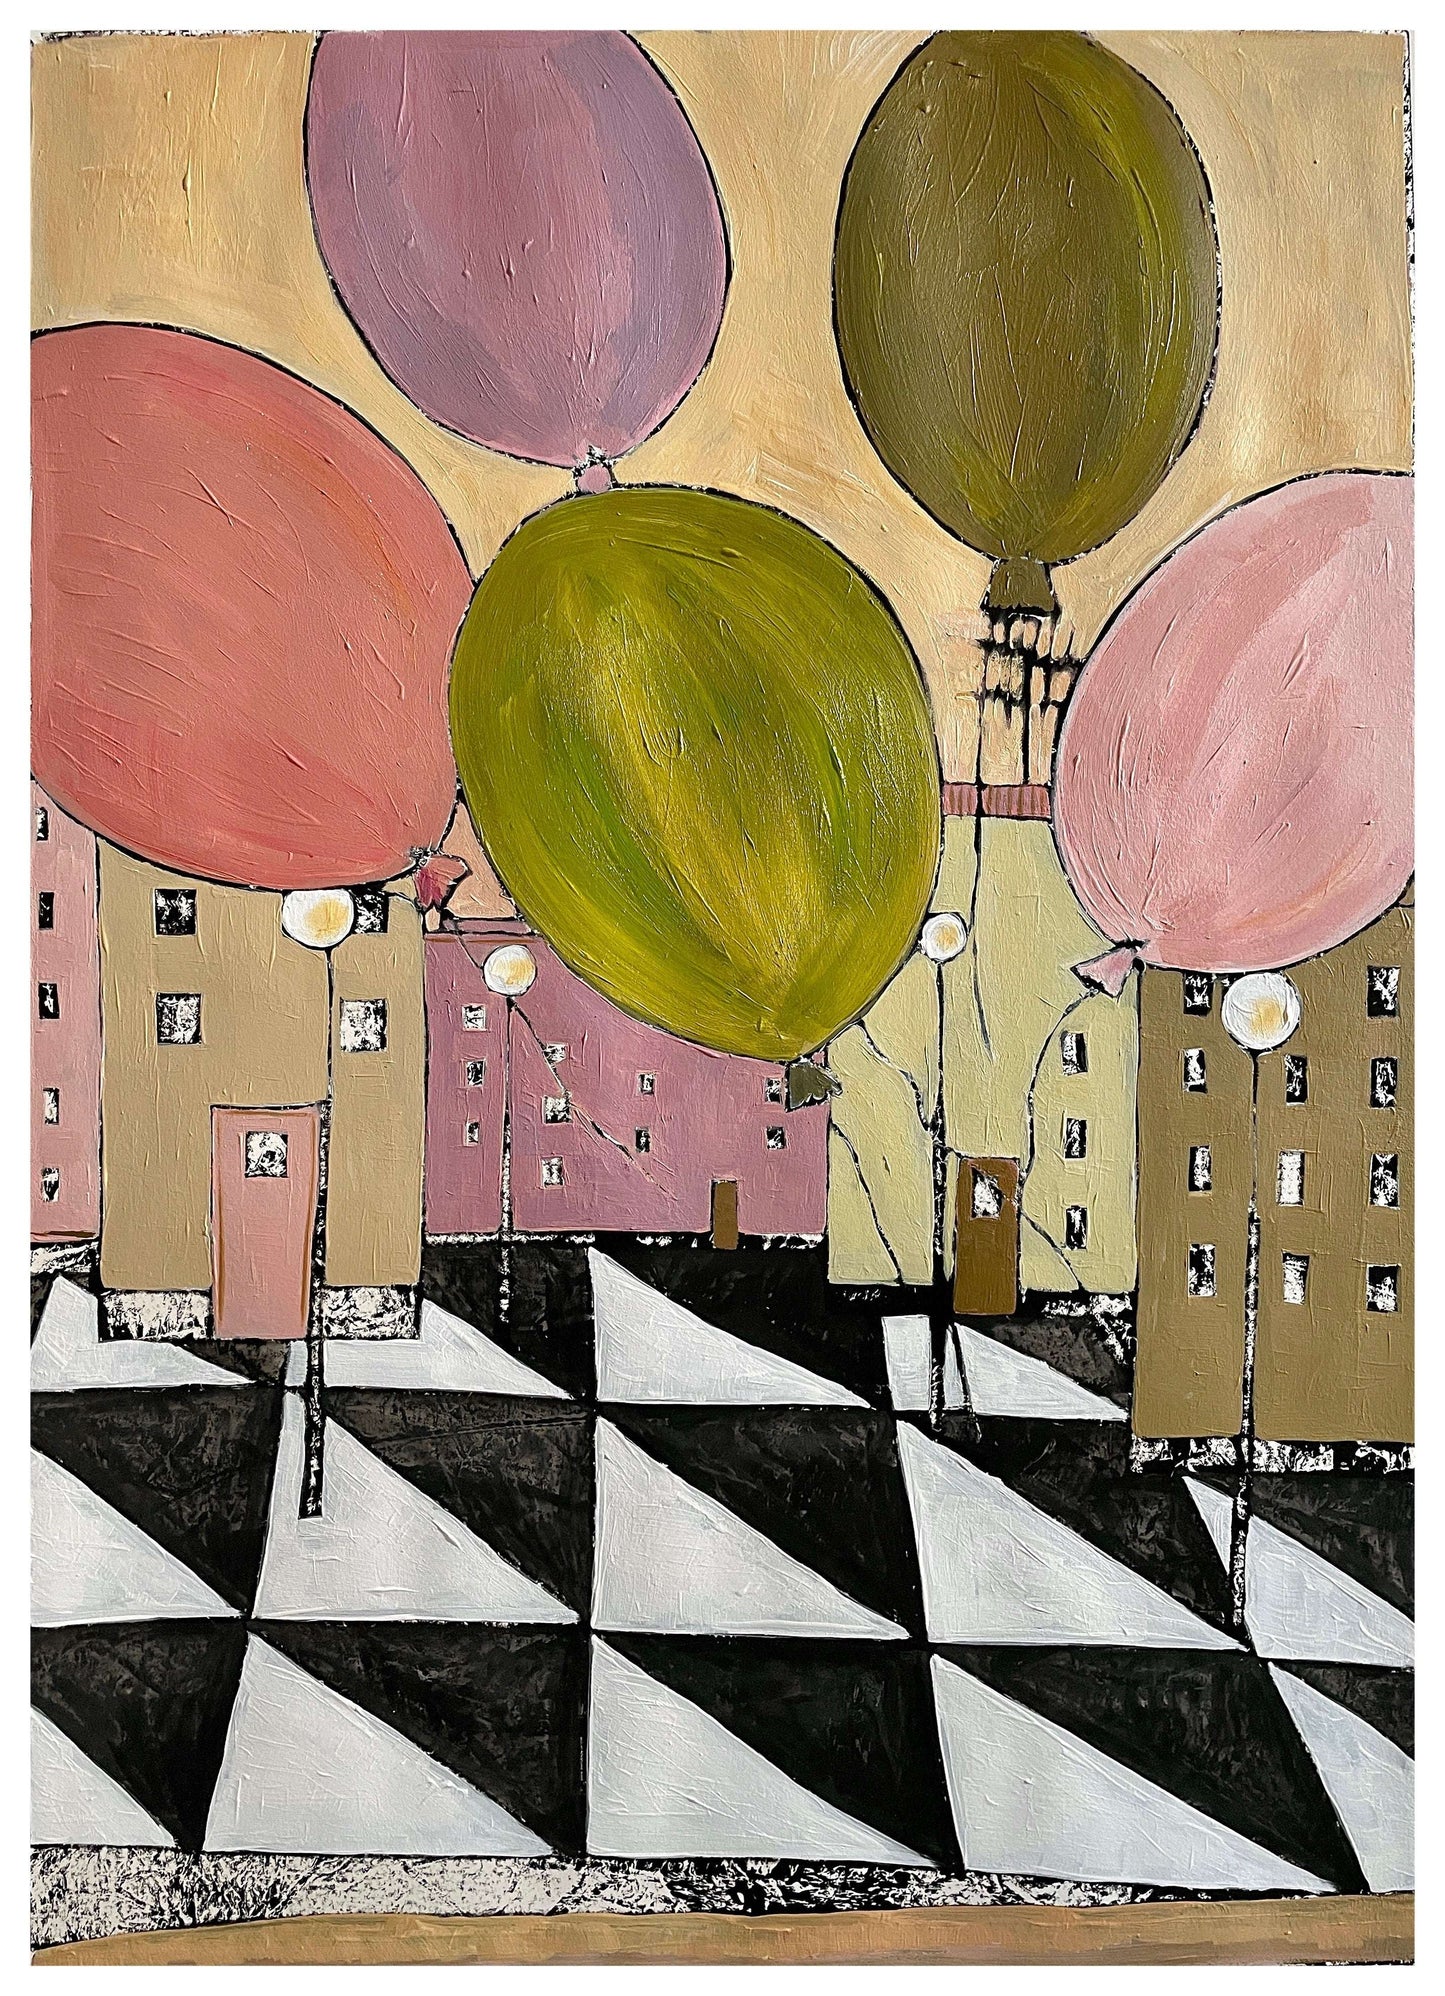 Karolina Nolin - City with balloons IV